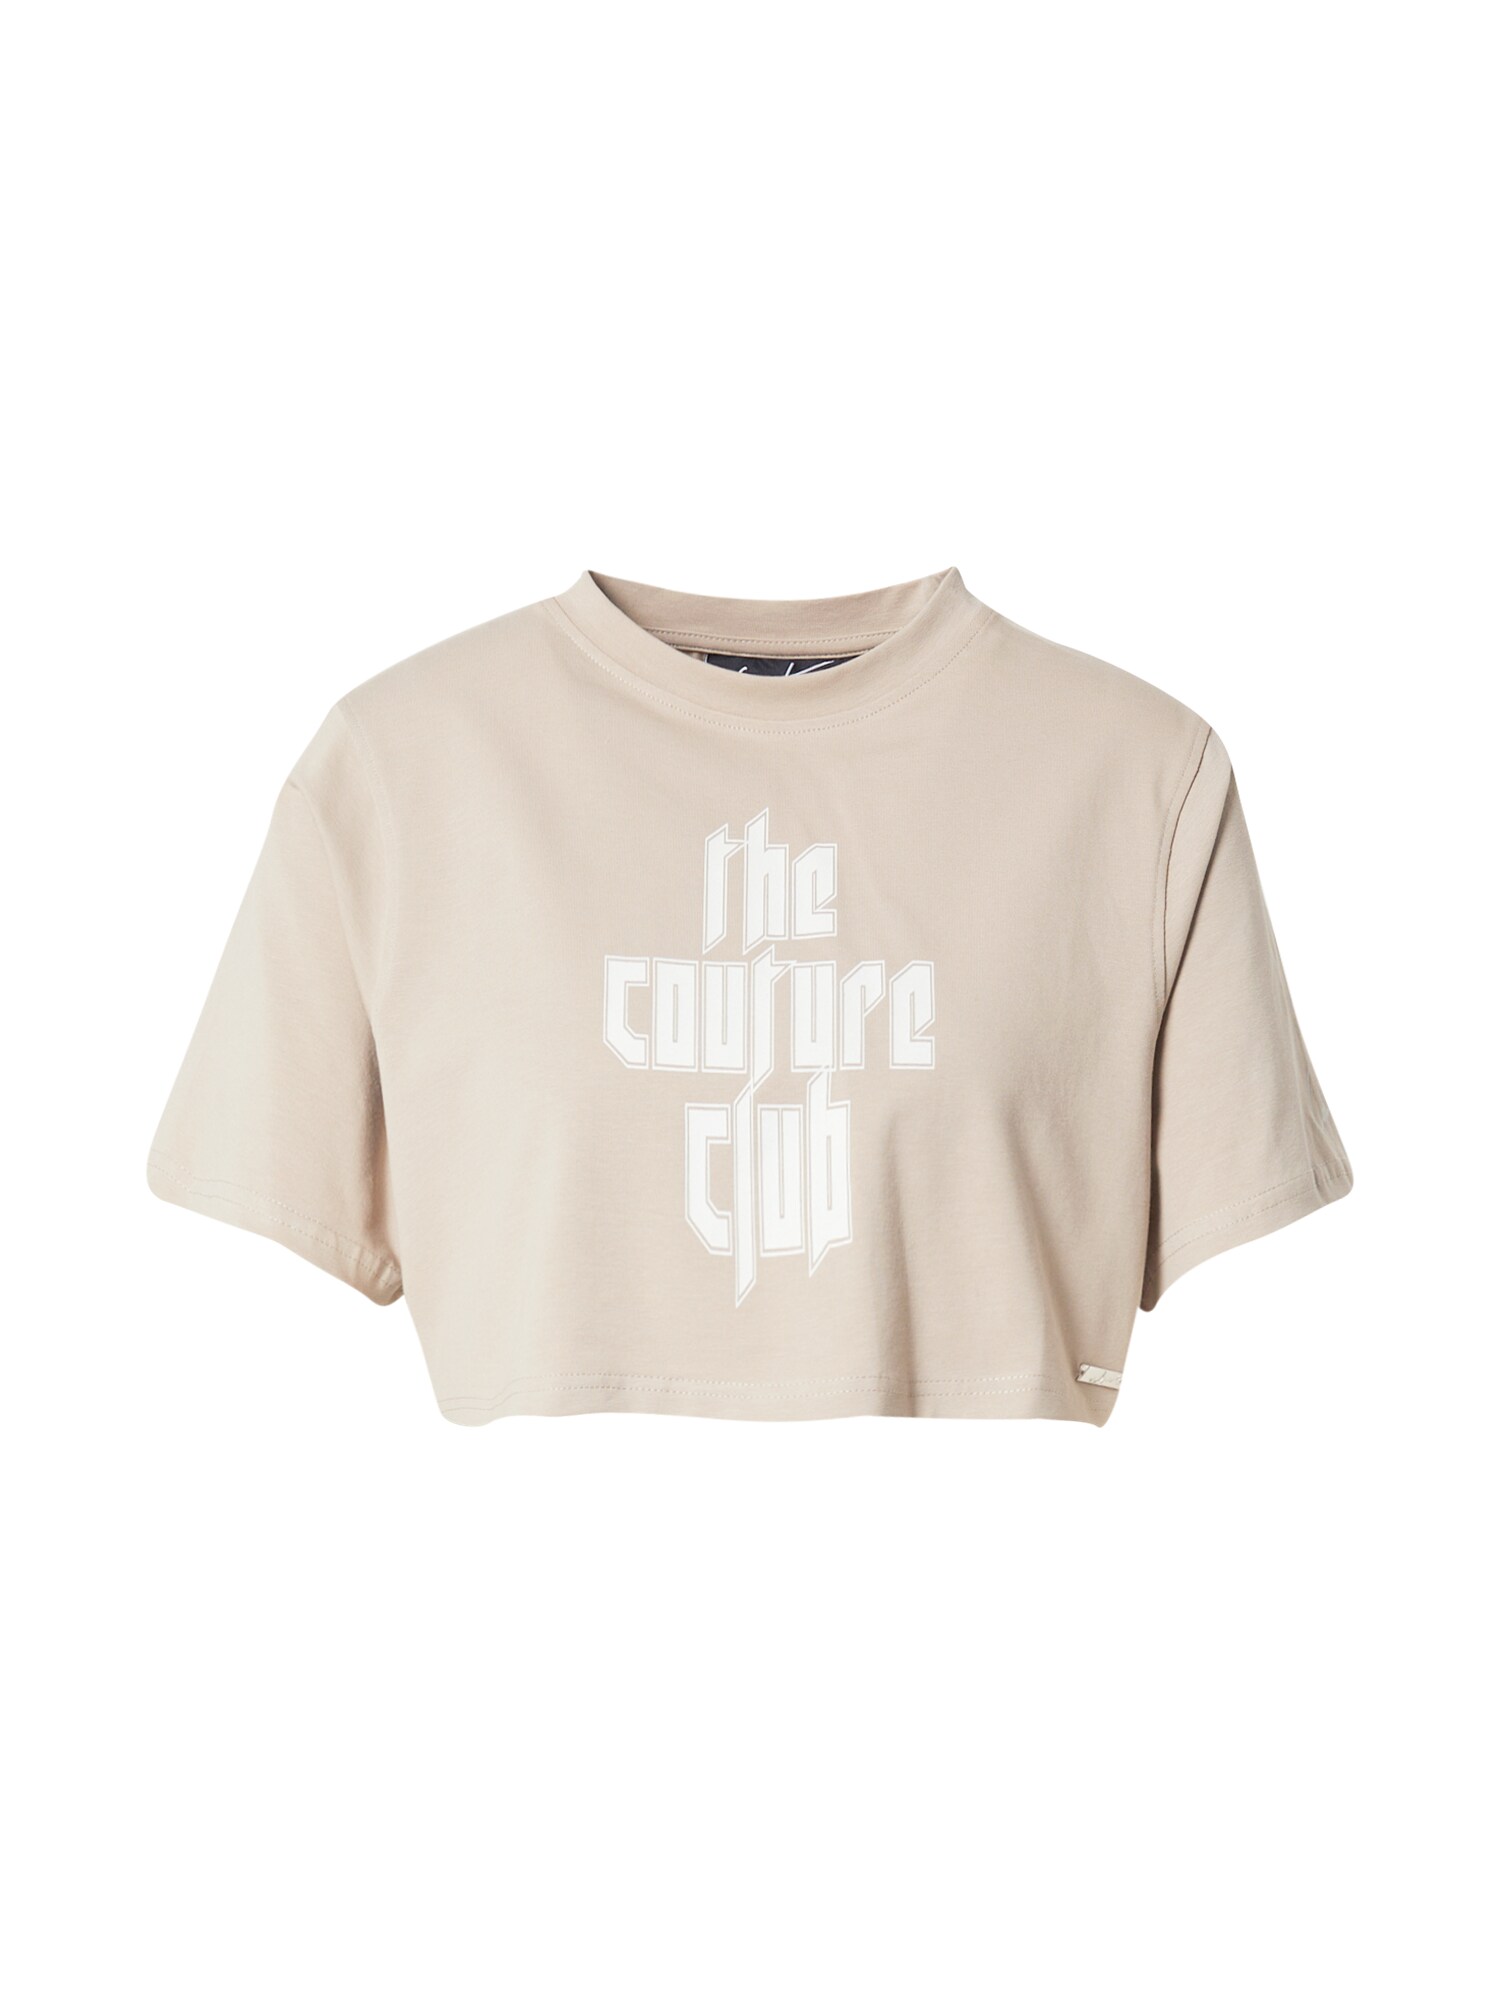 The Couture Club Marškinėliai balta / gelsvai pilka spalva